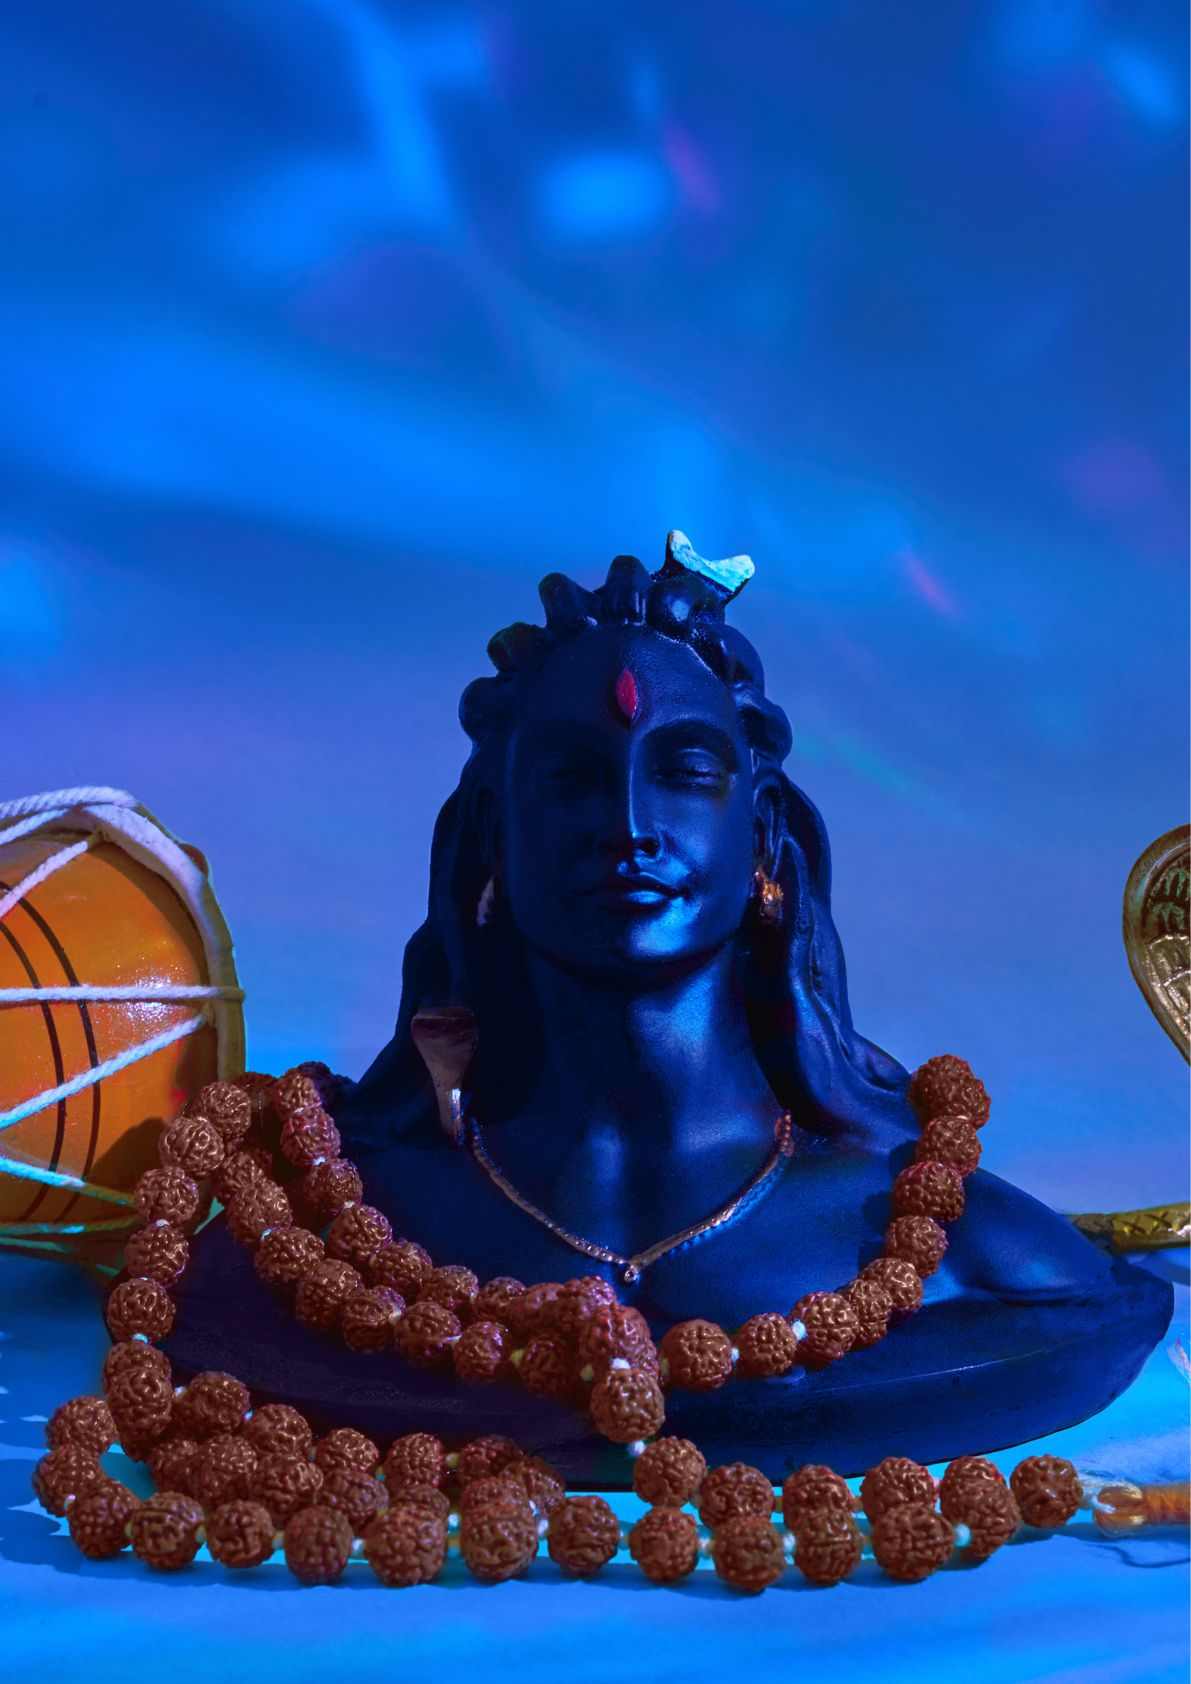 Shiva Puja